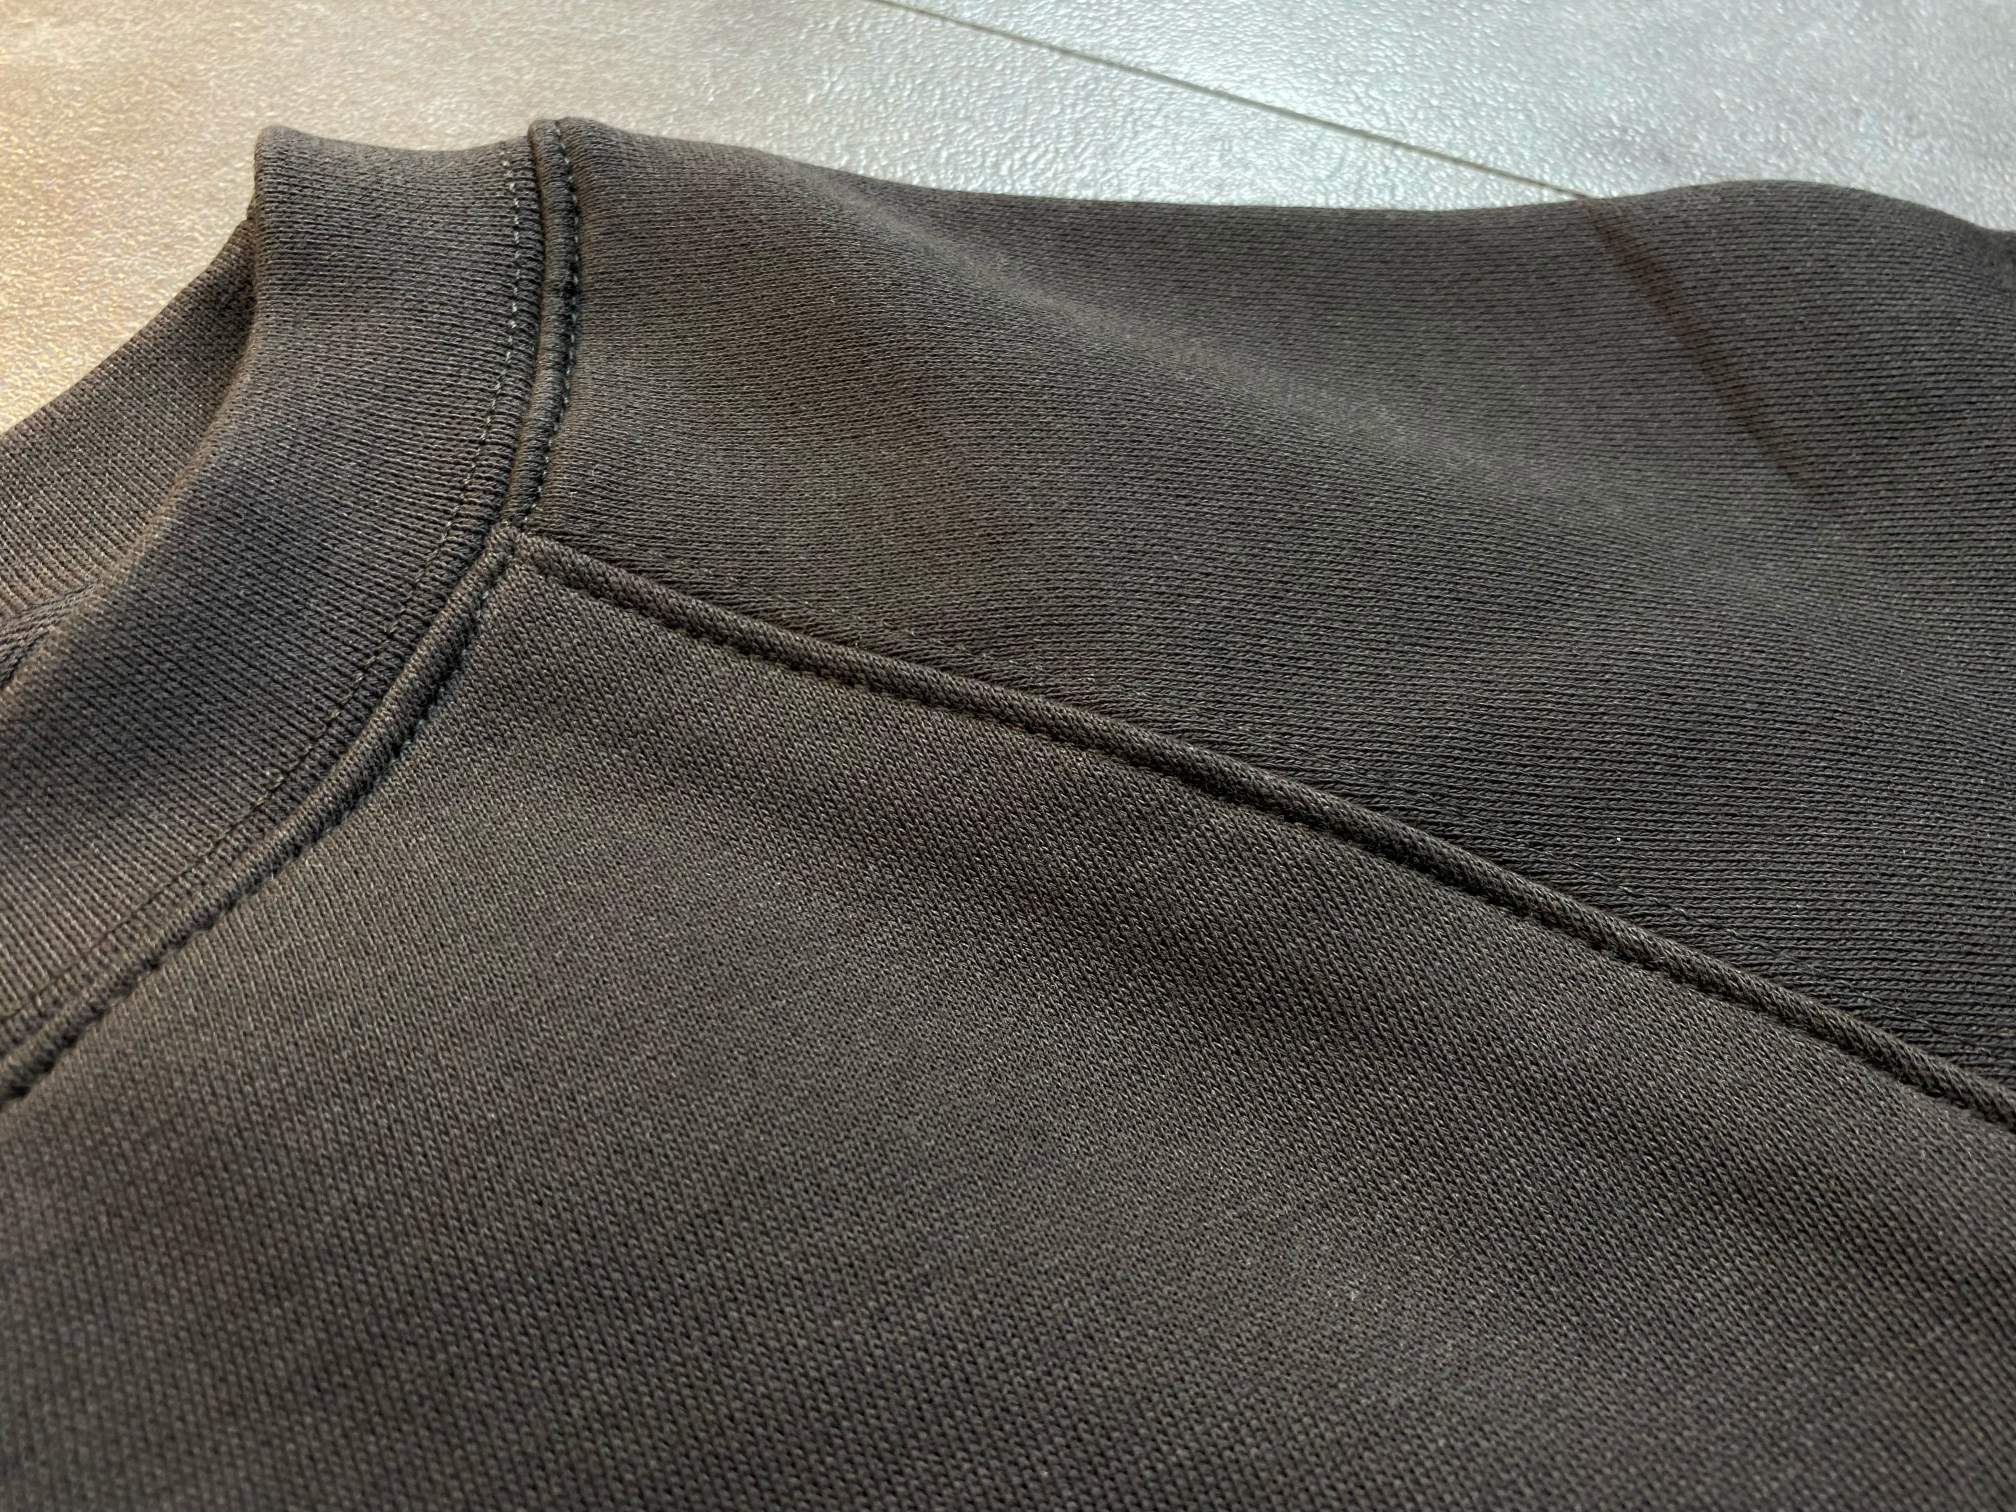 素敵なフィアオブゴッド カリフォルニア激安通販 シンプル 純綿パーカー 新作 人気 ファッション 2色可選_8